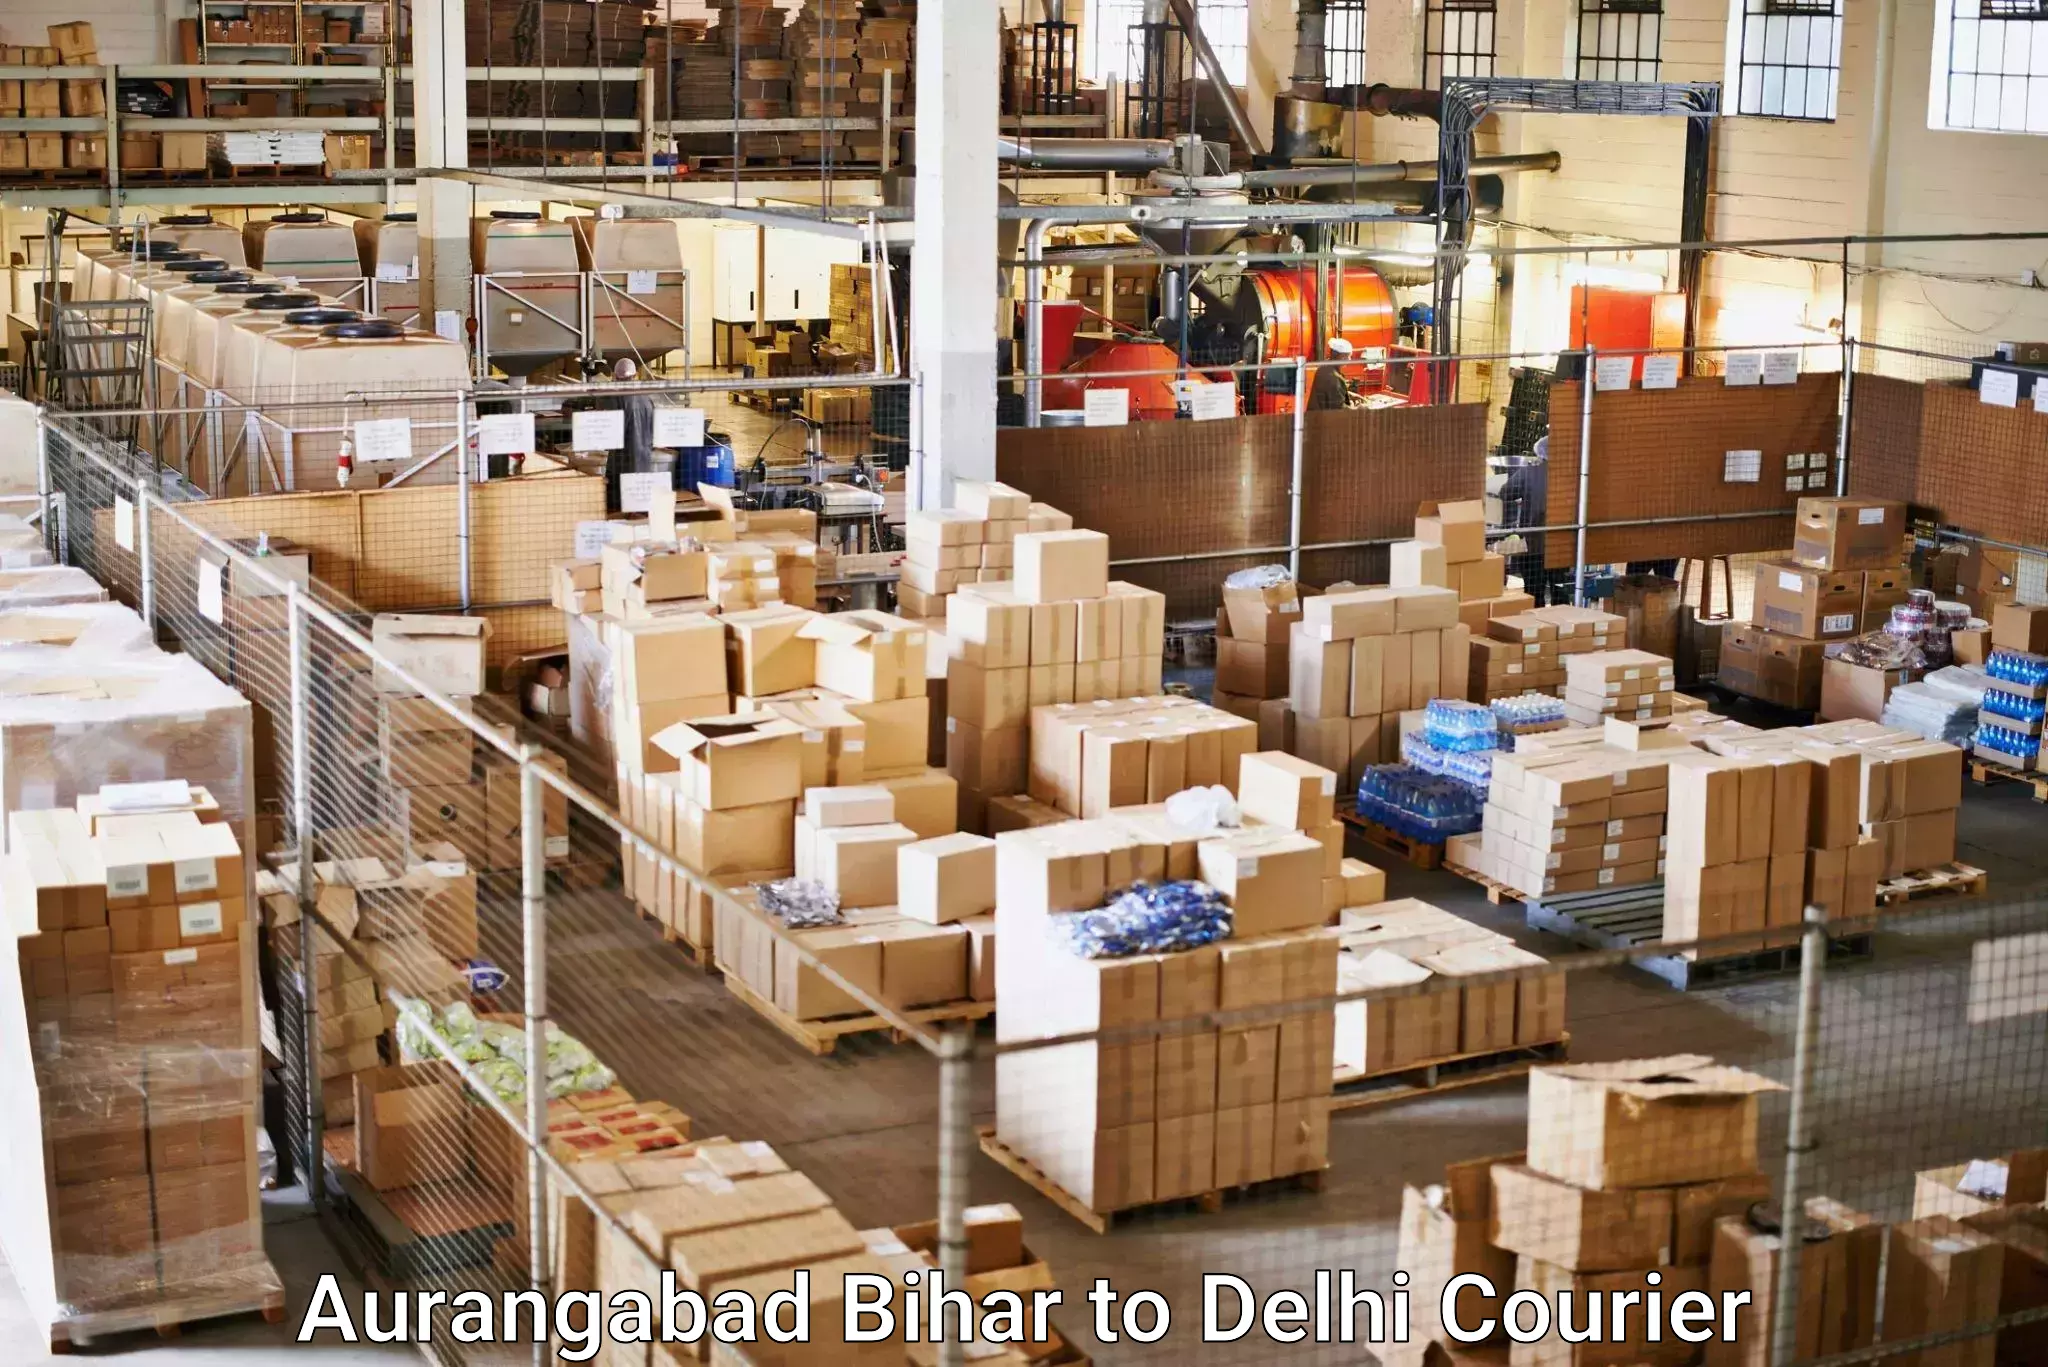 Cash on delivery service Aurangabad Bihar to East Delhi